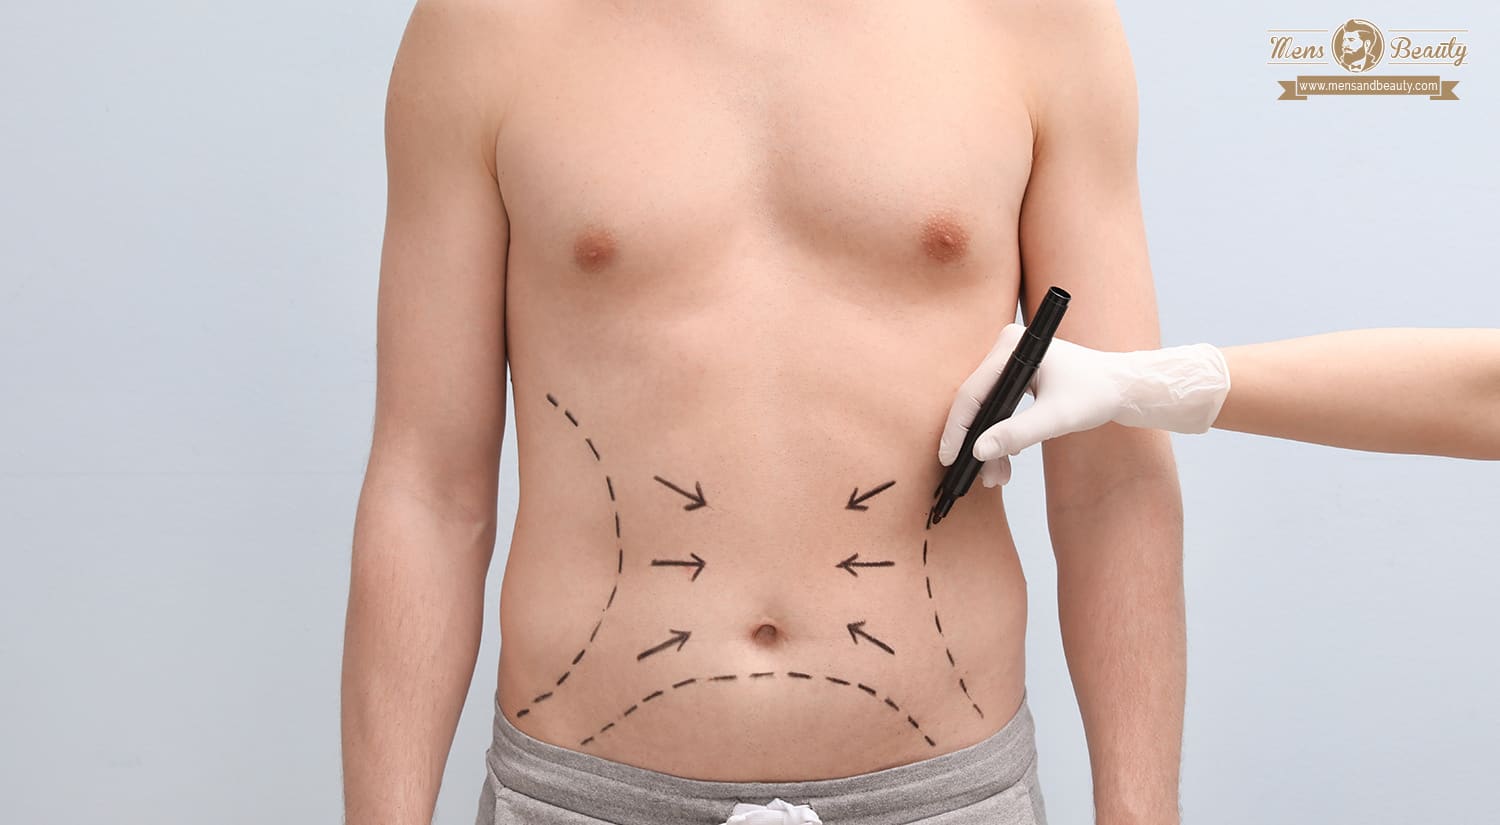 cirugia estetica hombres plastica operaciones tratamientos belleza masculina abdominoplastia